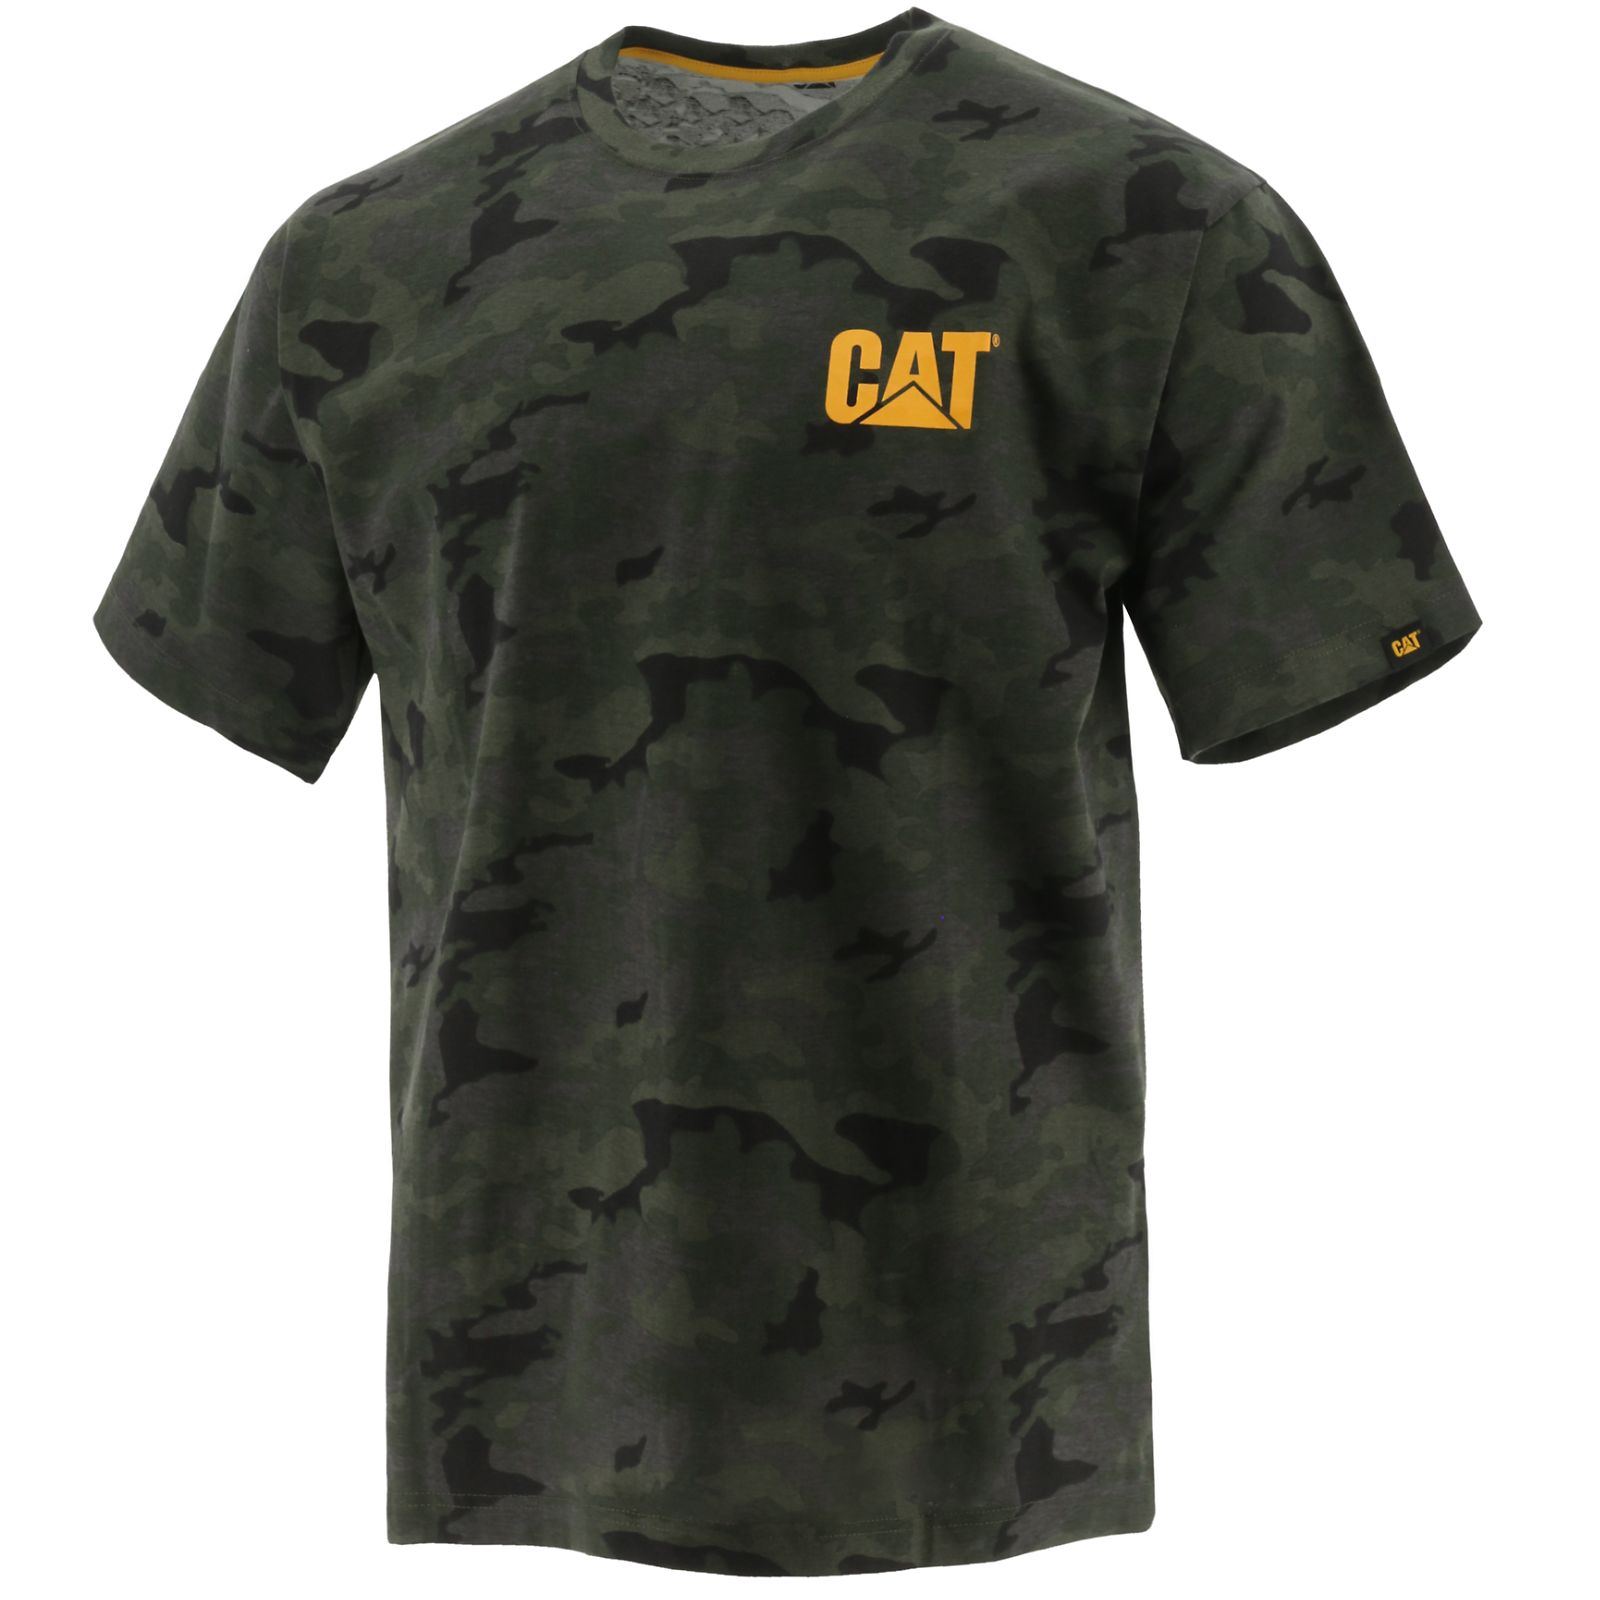 Caterpillar Clothing Pakistan - Caterpillar Trademark Mens T-Shirts Camo (743851-GKV)